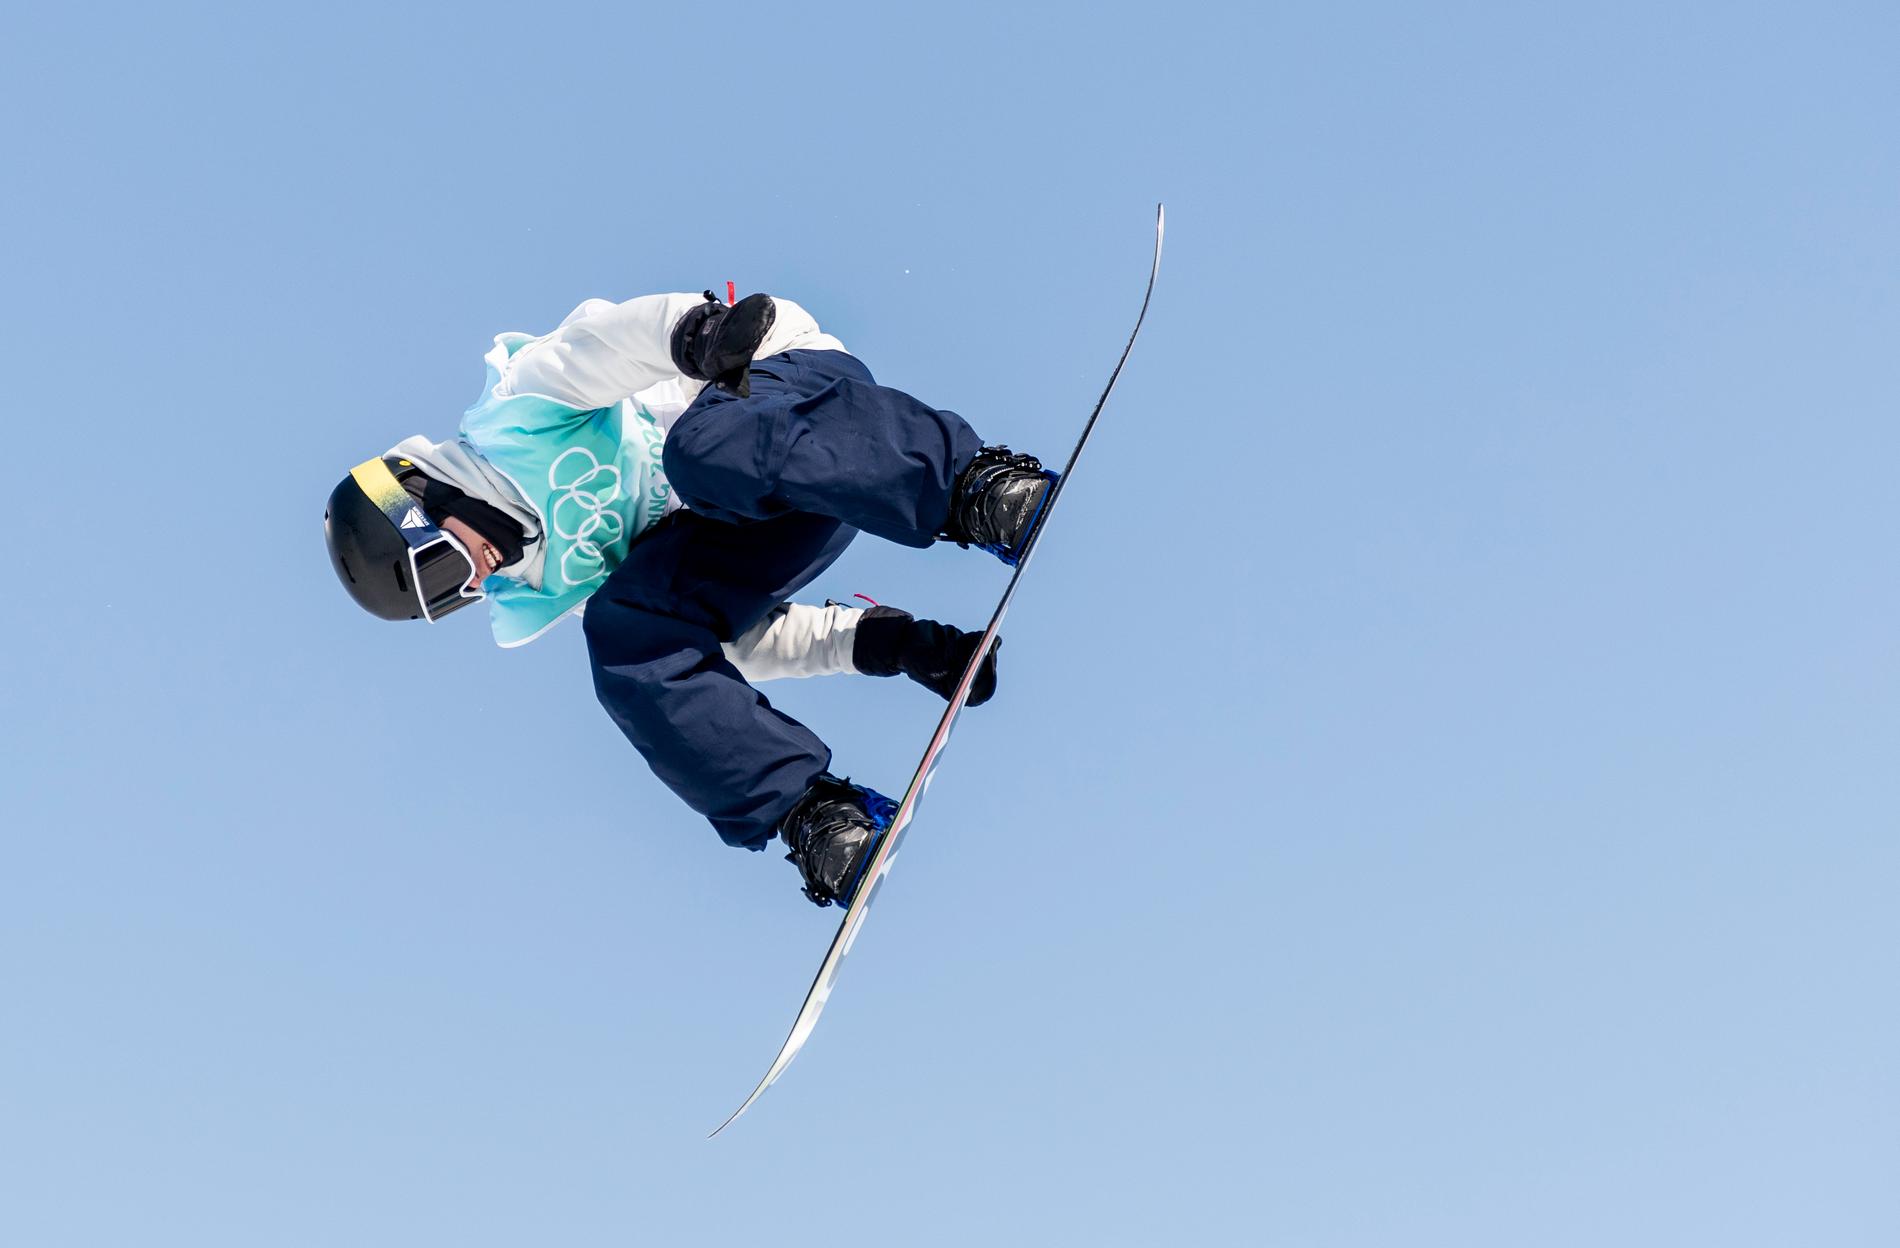 Sveriges Sven Thorgren och de andra snowboardåkarna får nu med sin sport i det internationella förbundets namn, som från och med nu heter Internationella skid- och snowboardförbundet. Arkivbild.